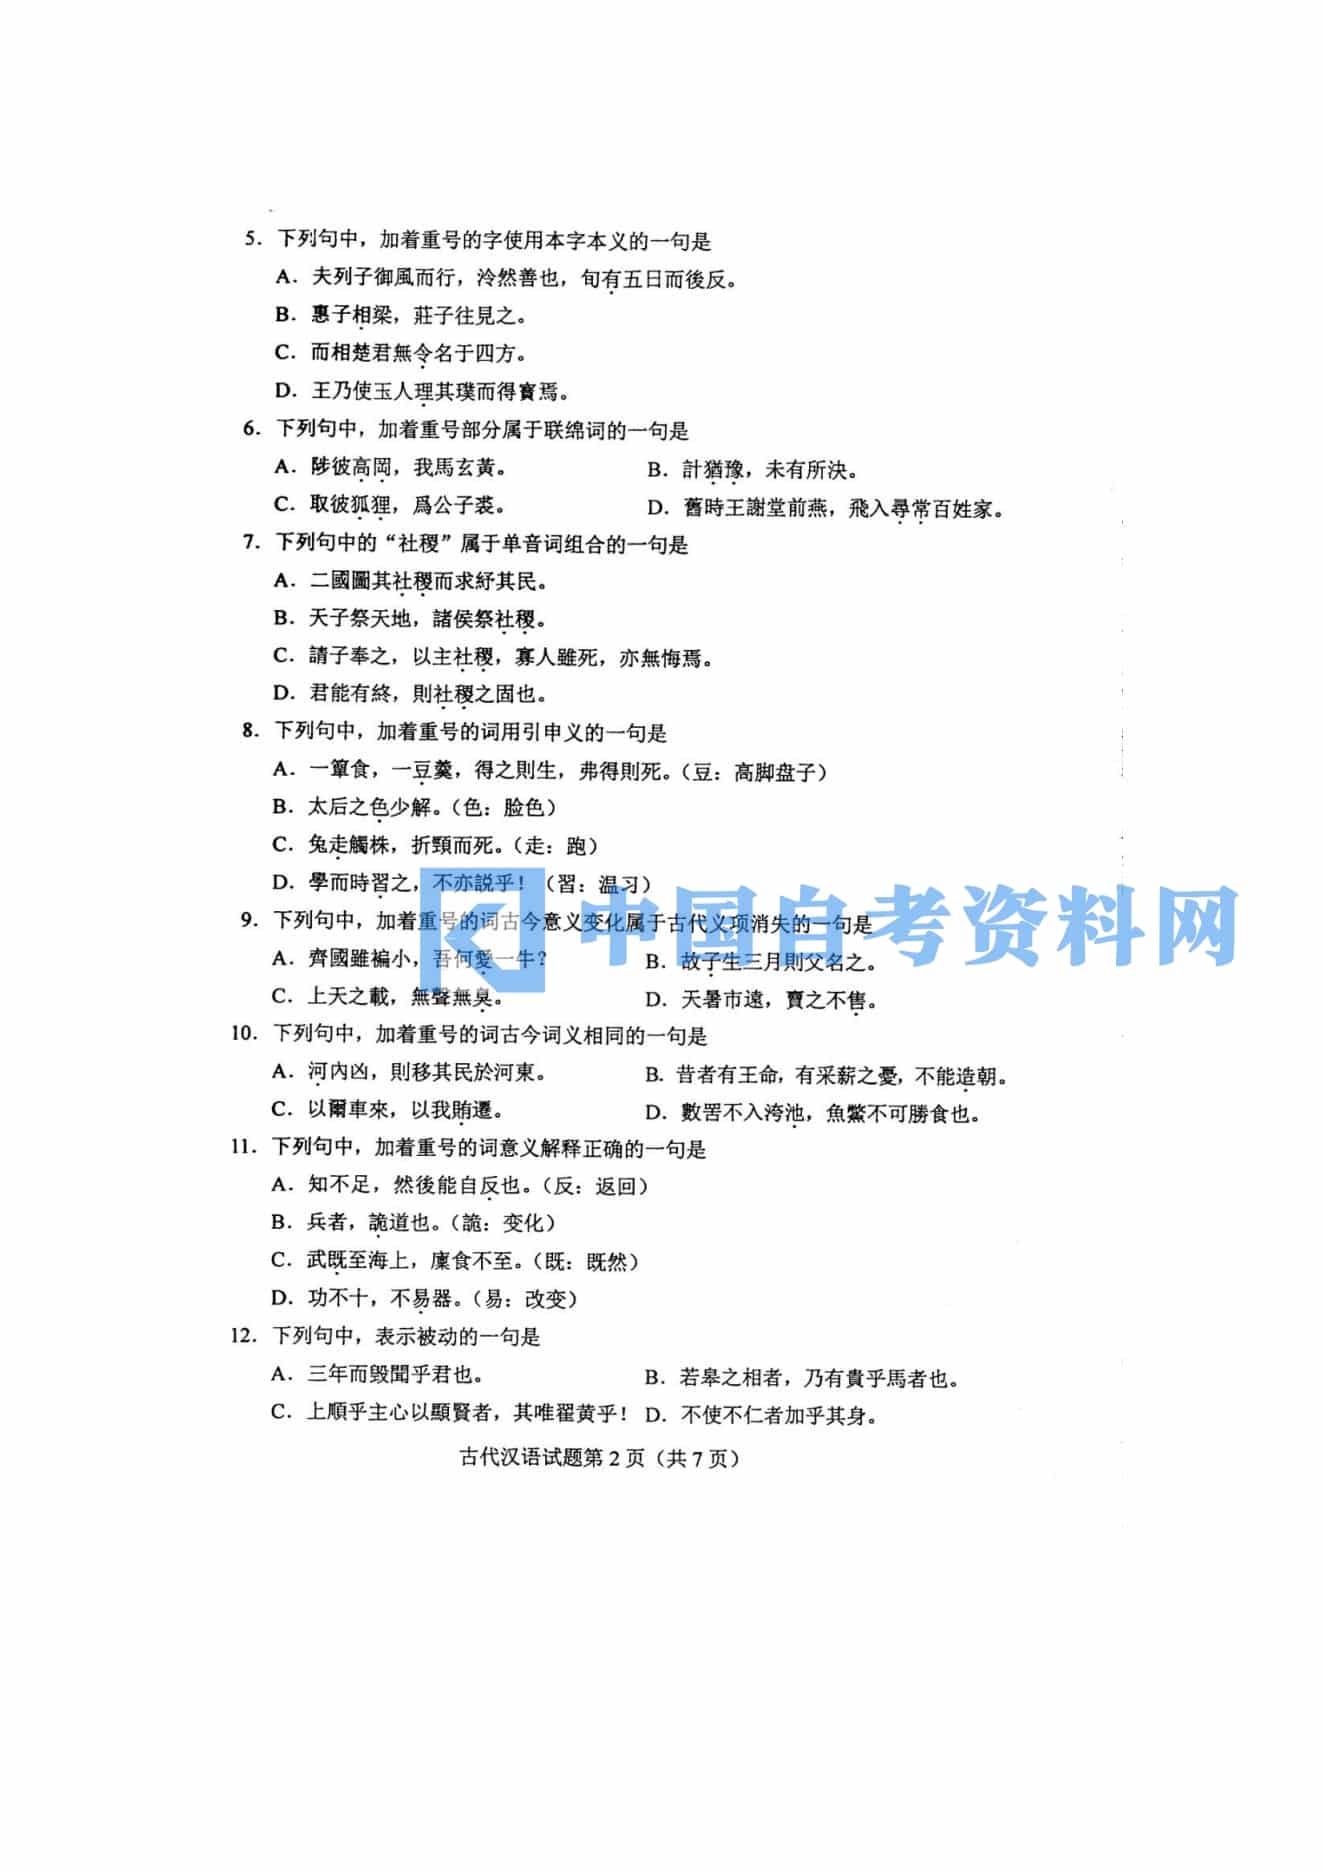 高等教育自学考试00536古代汉语历年真题及答案插图1